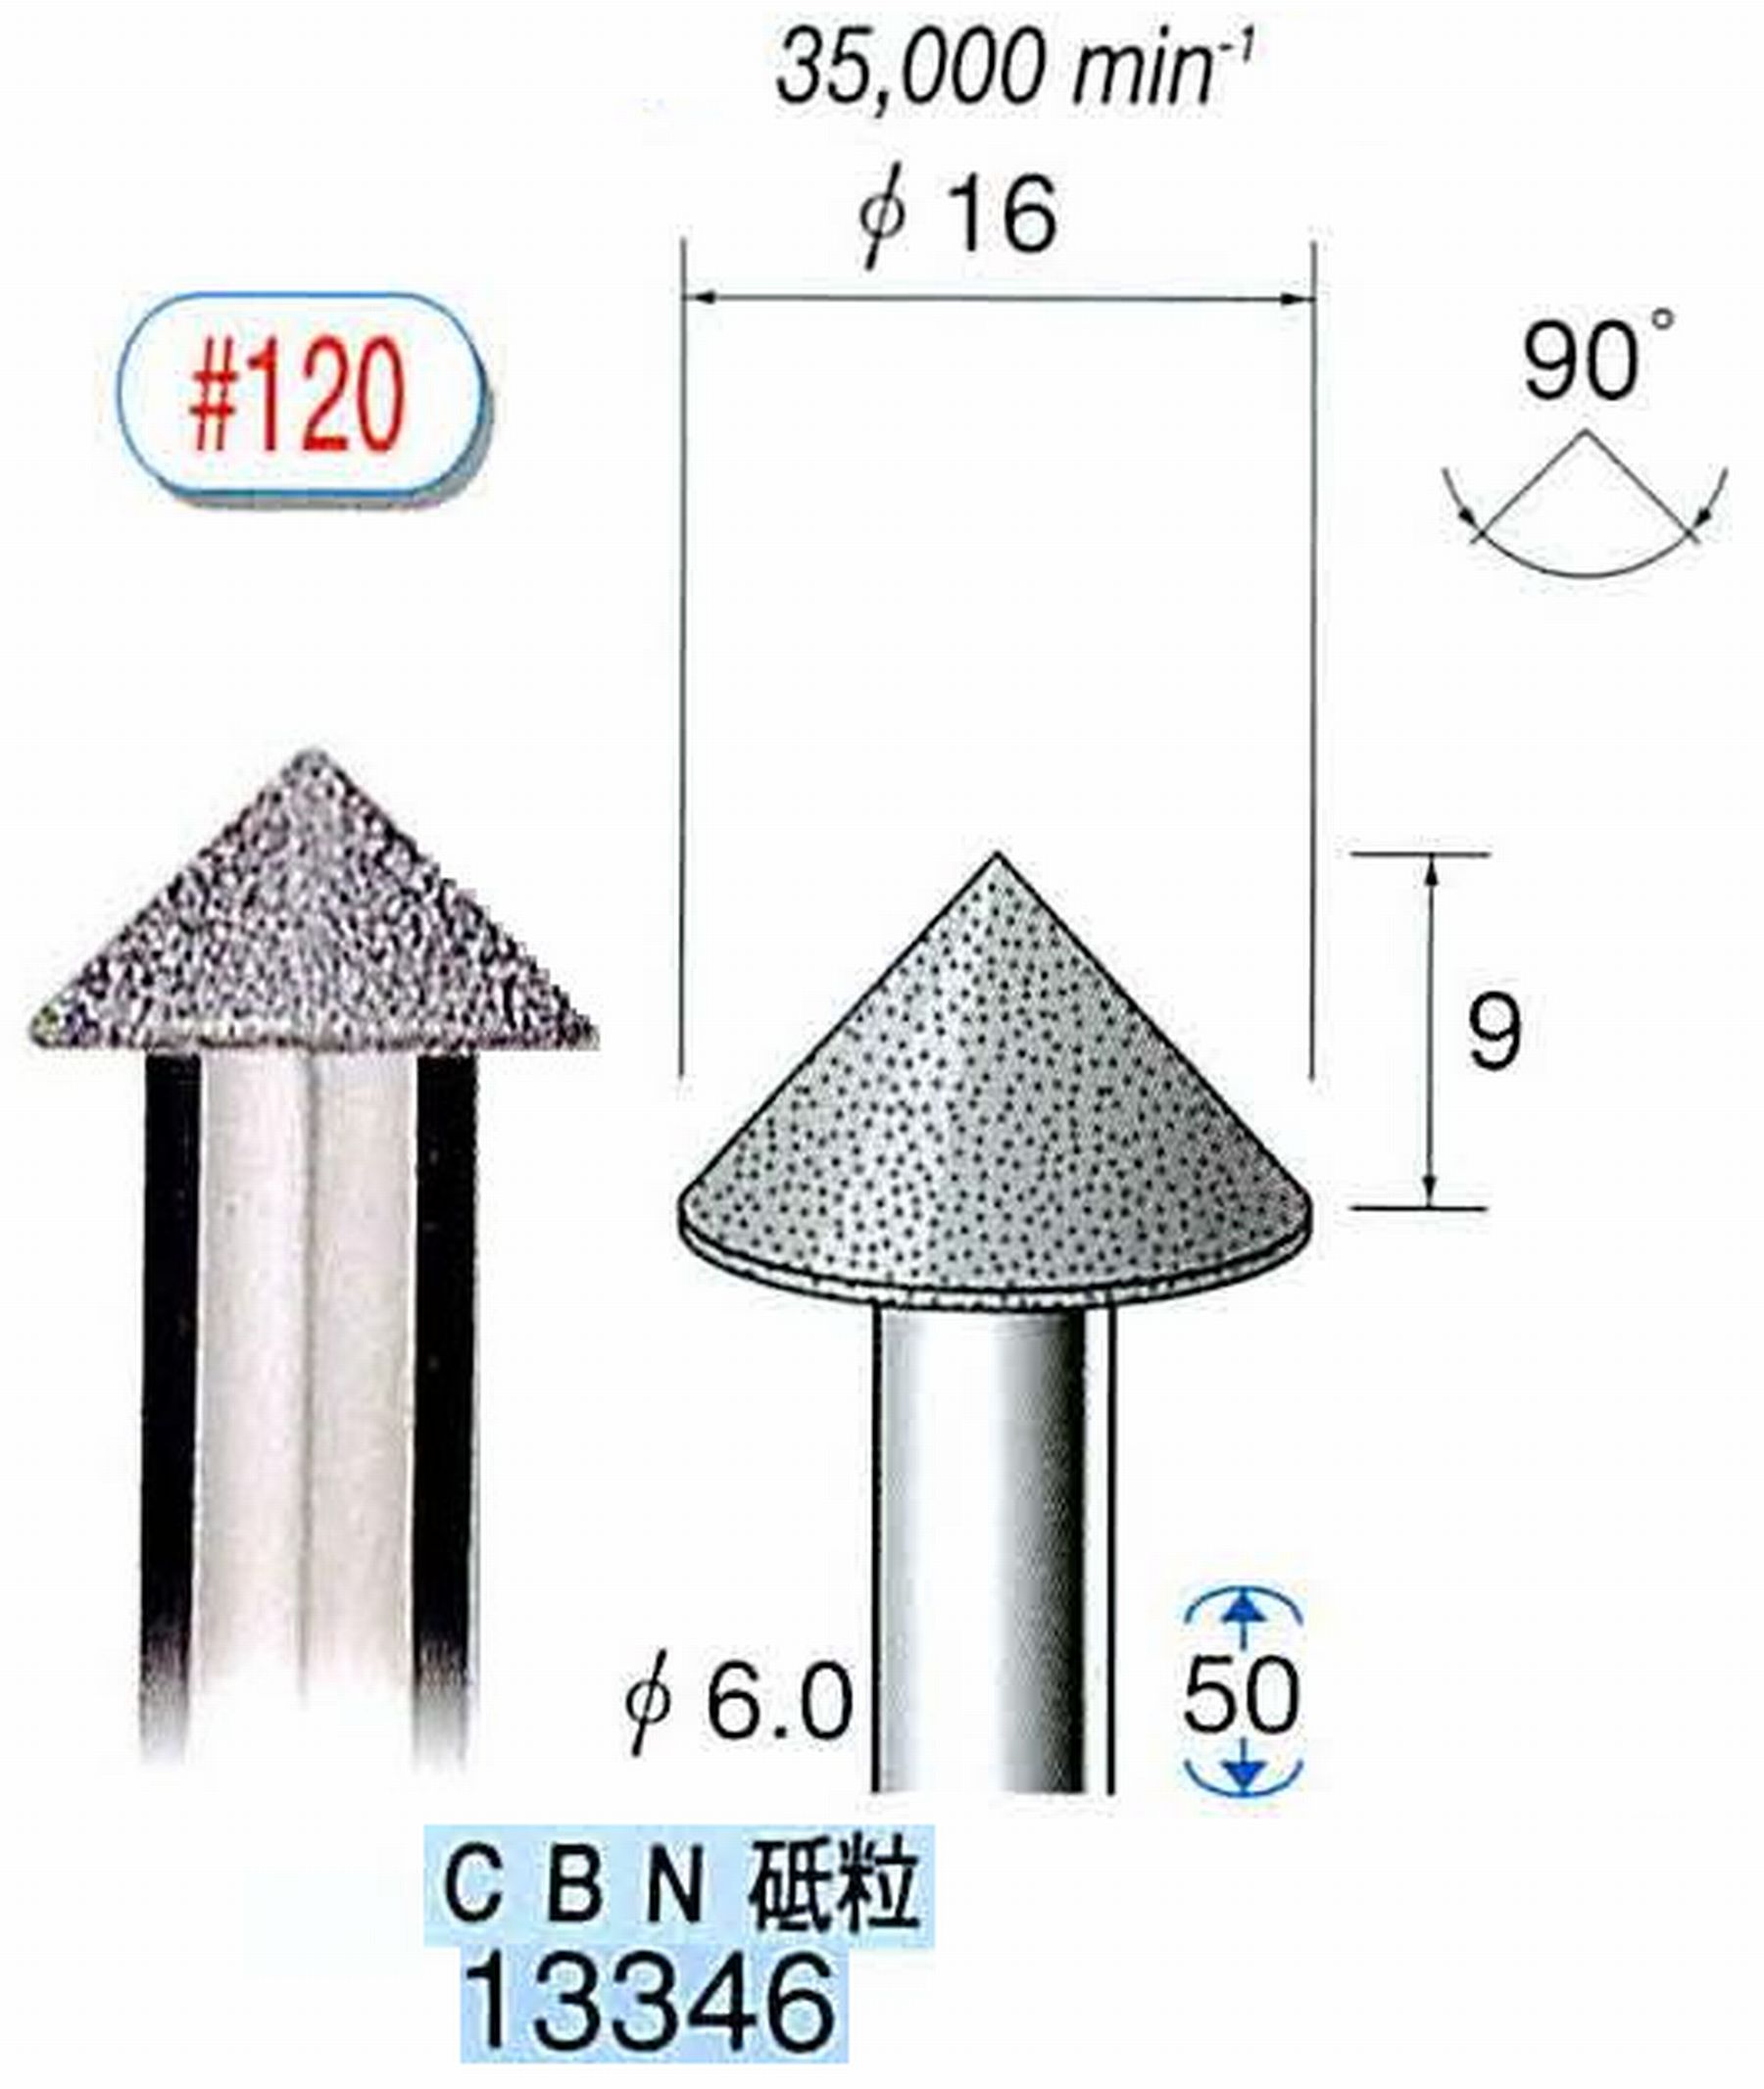 ナカニシ/NAKANISHI 電着CBNバー CBN砥粒 軸径(シャンク)φ6.0mm 13346